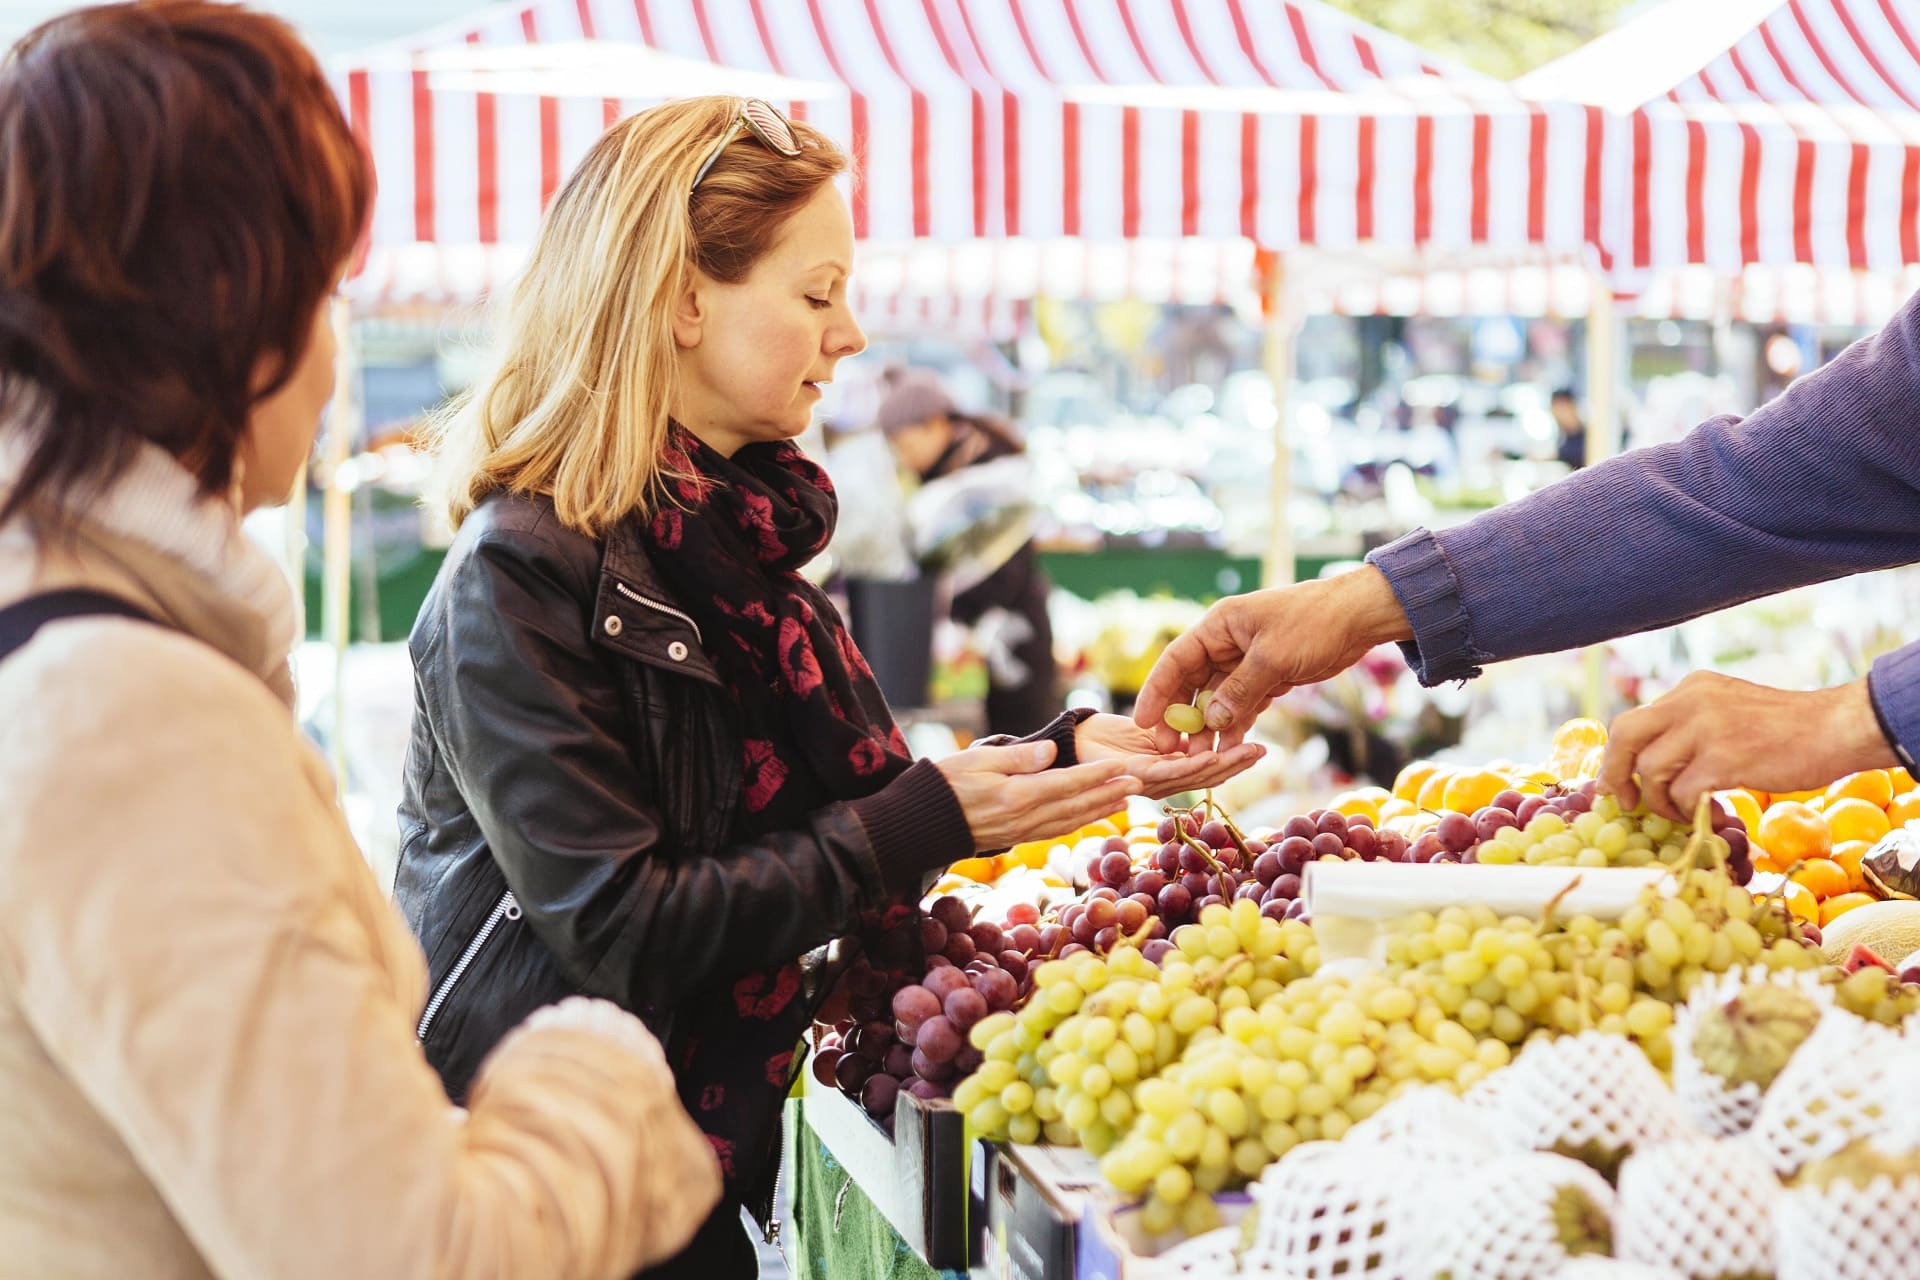 mature woman buying grapes at market stall 2021 08 29 00 50 39 utc min